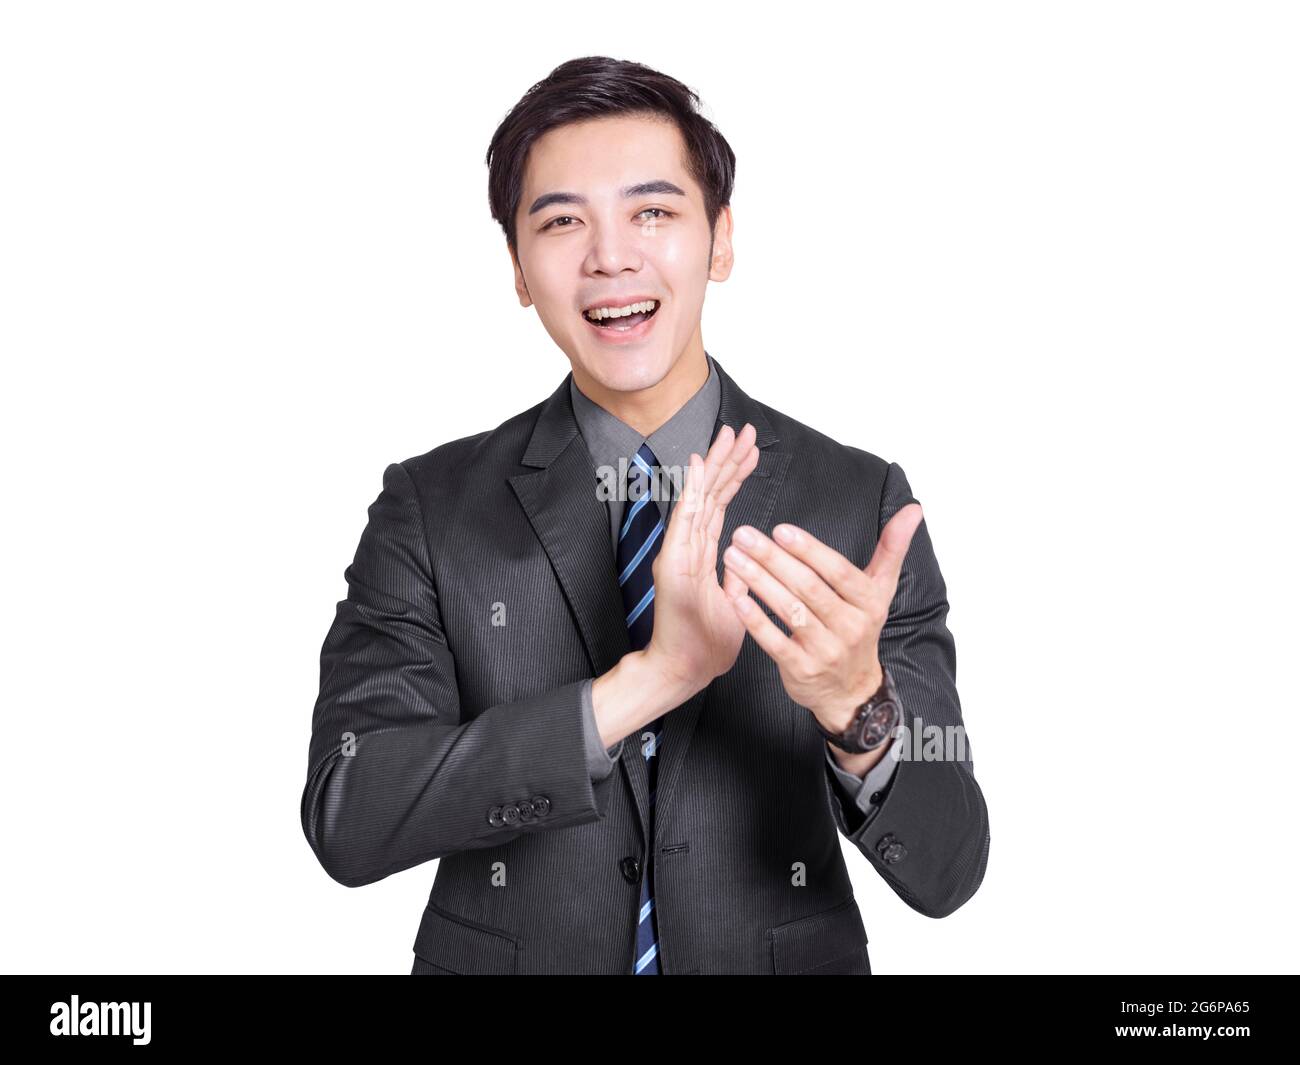 Le jeune homme d'affaires séduisant applaudit avec enthousiasme. Banque D'Images